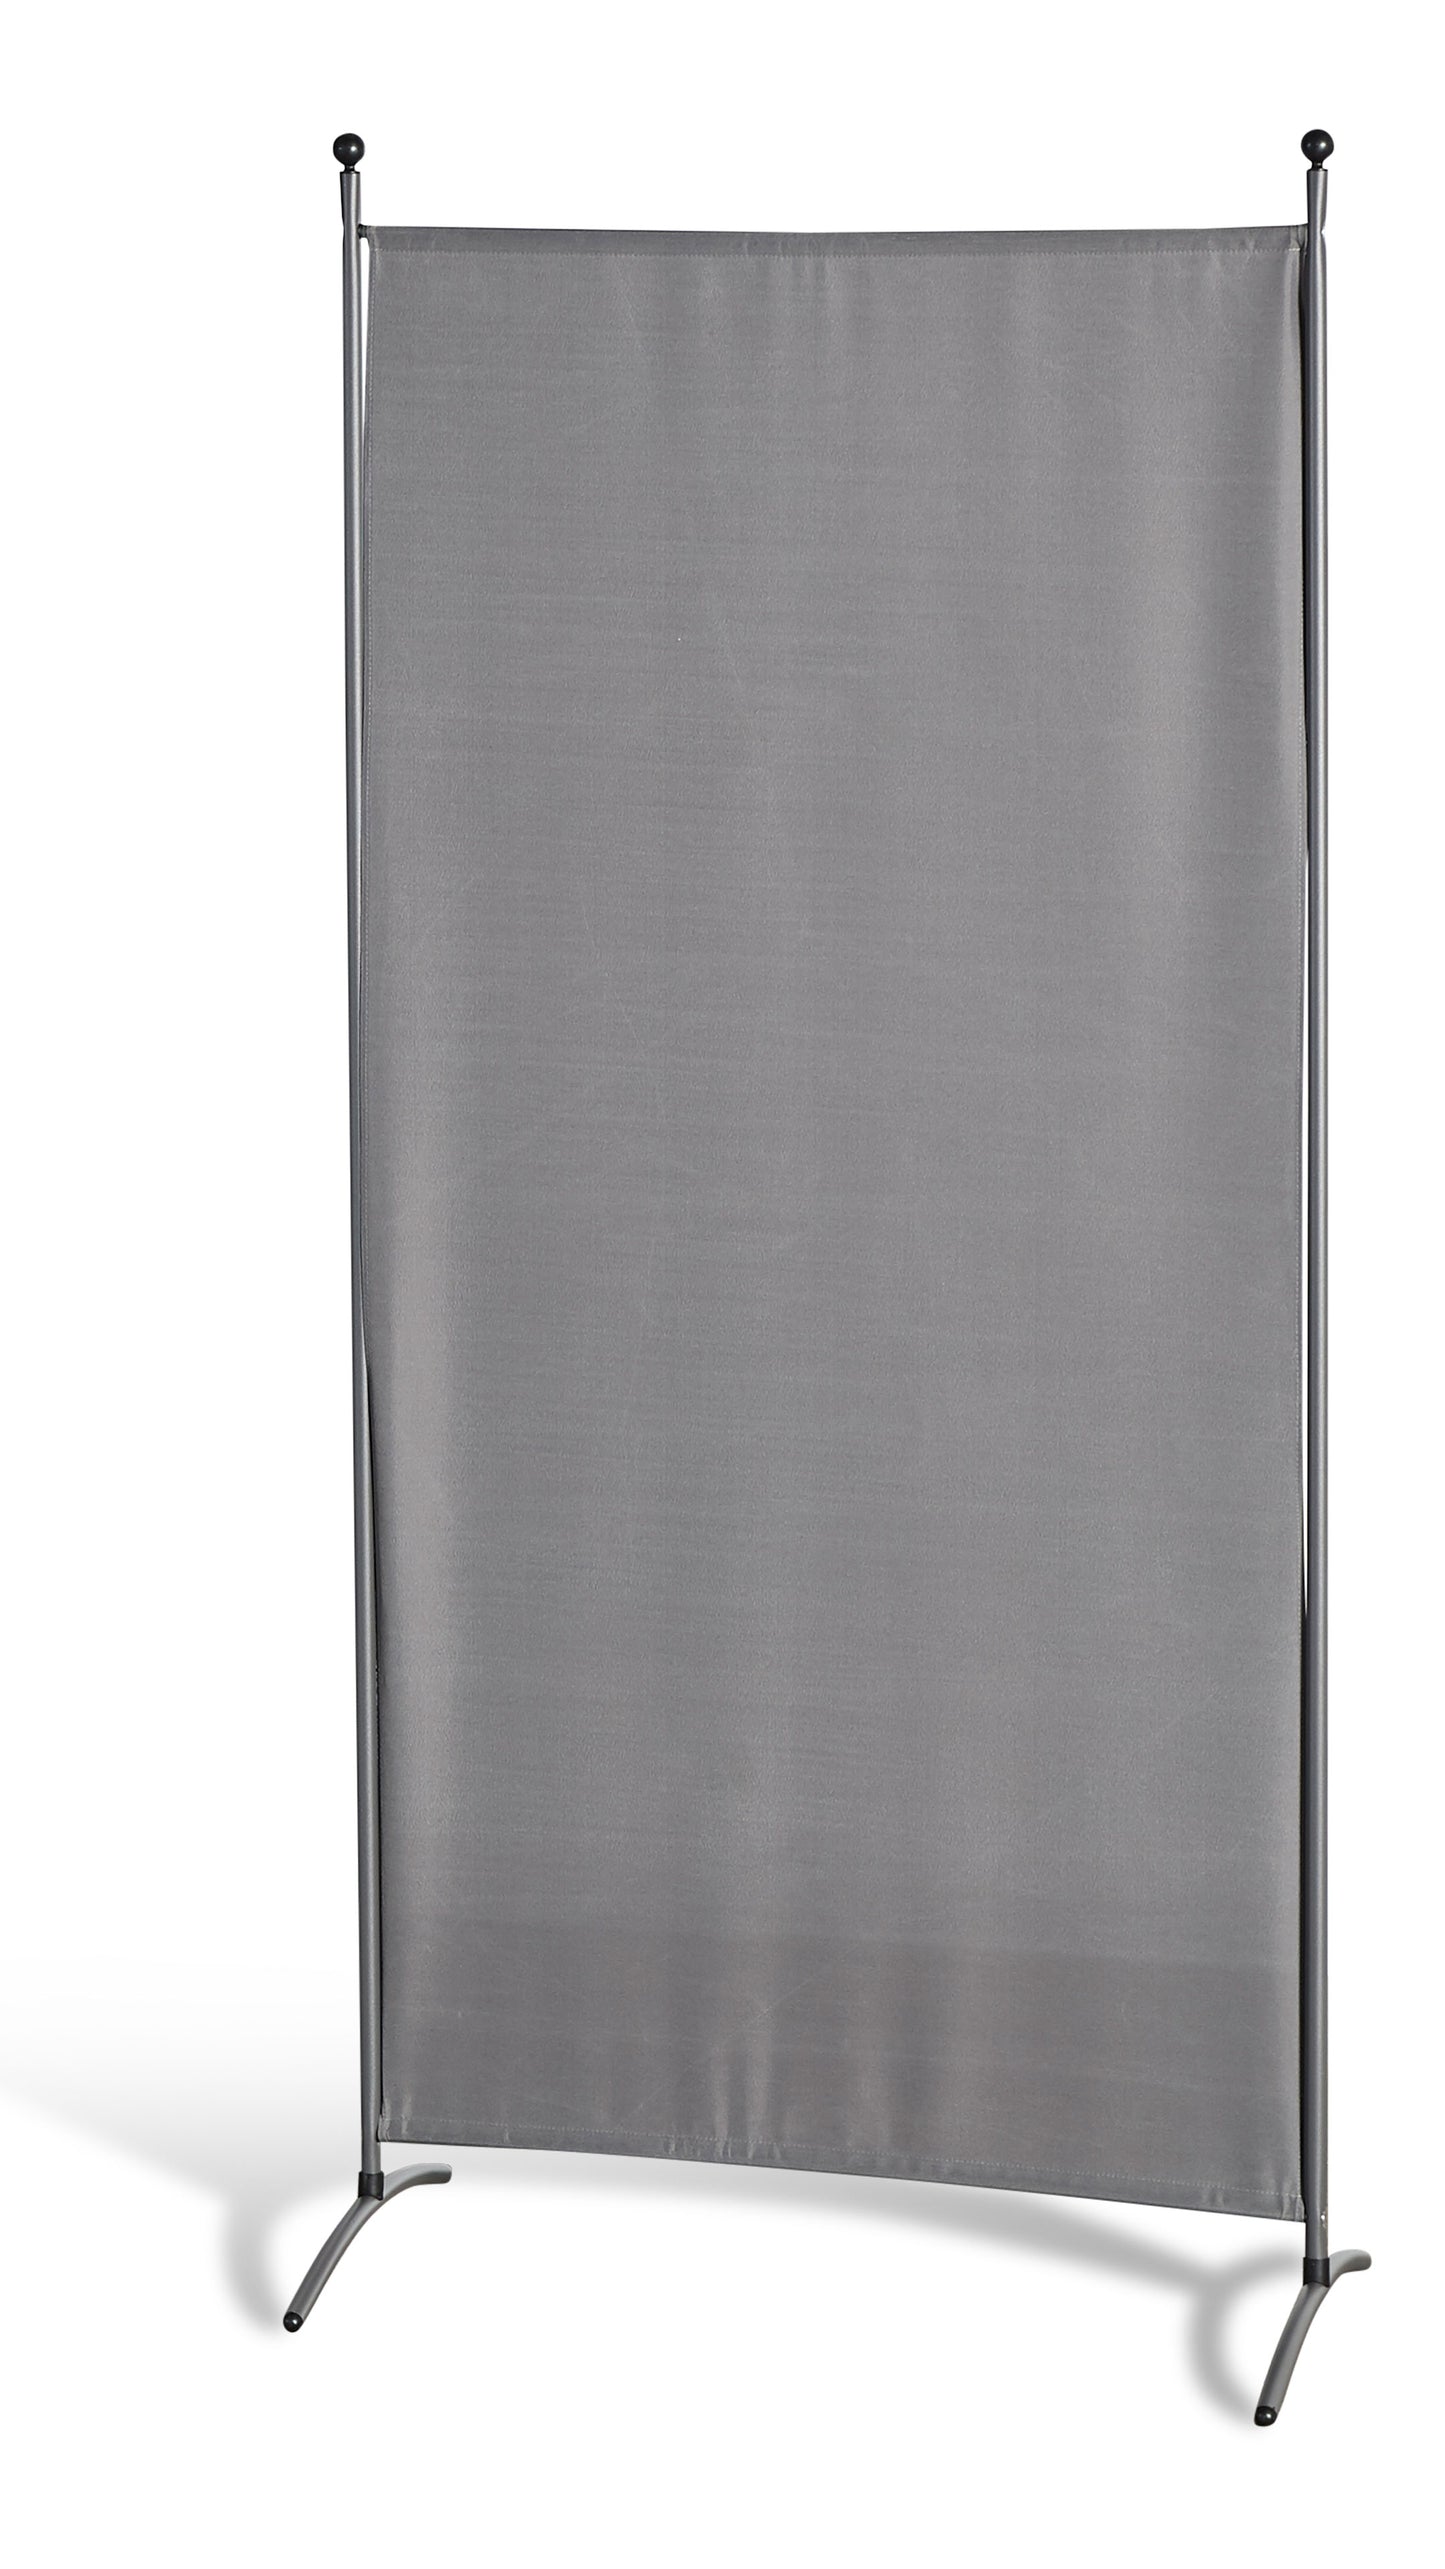 Stellwand 85 x 180 cm - Grau - Paravent  Raumteiler Trennwand Sichtschutz